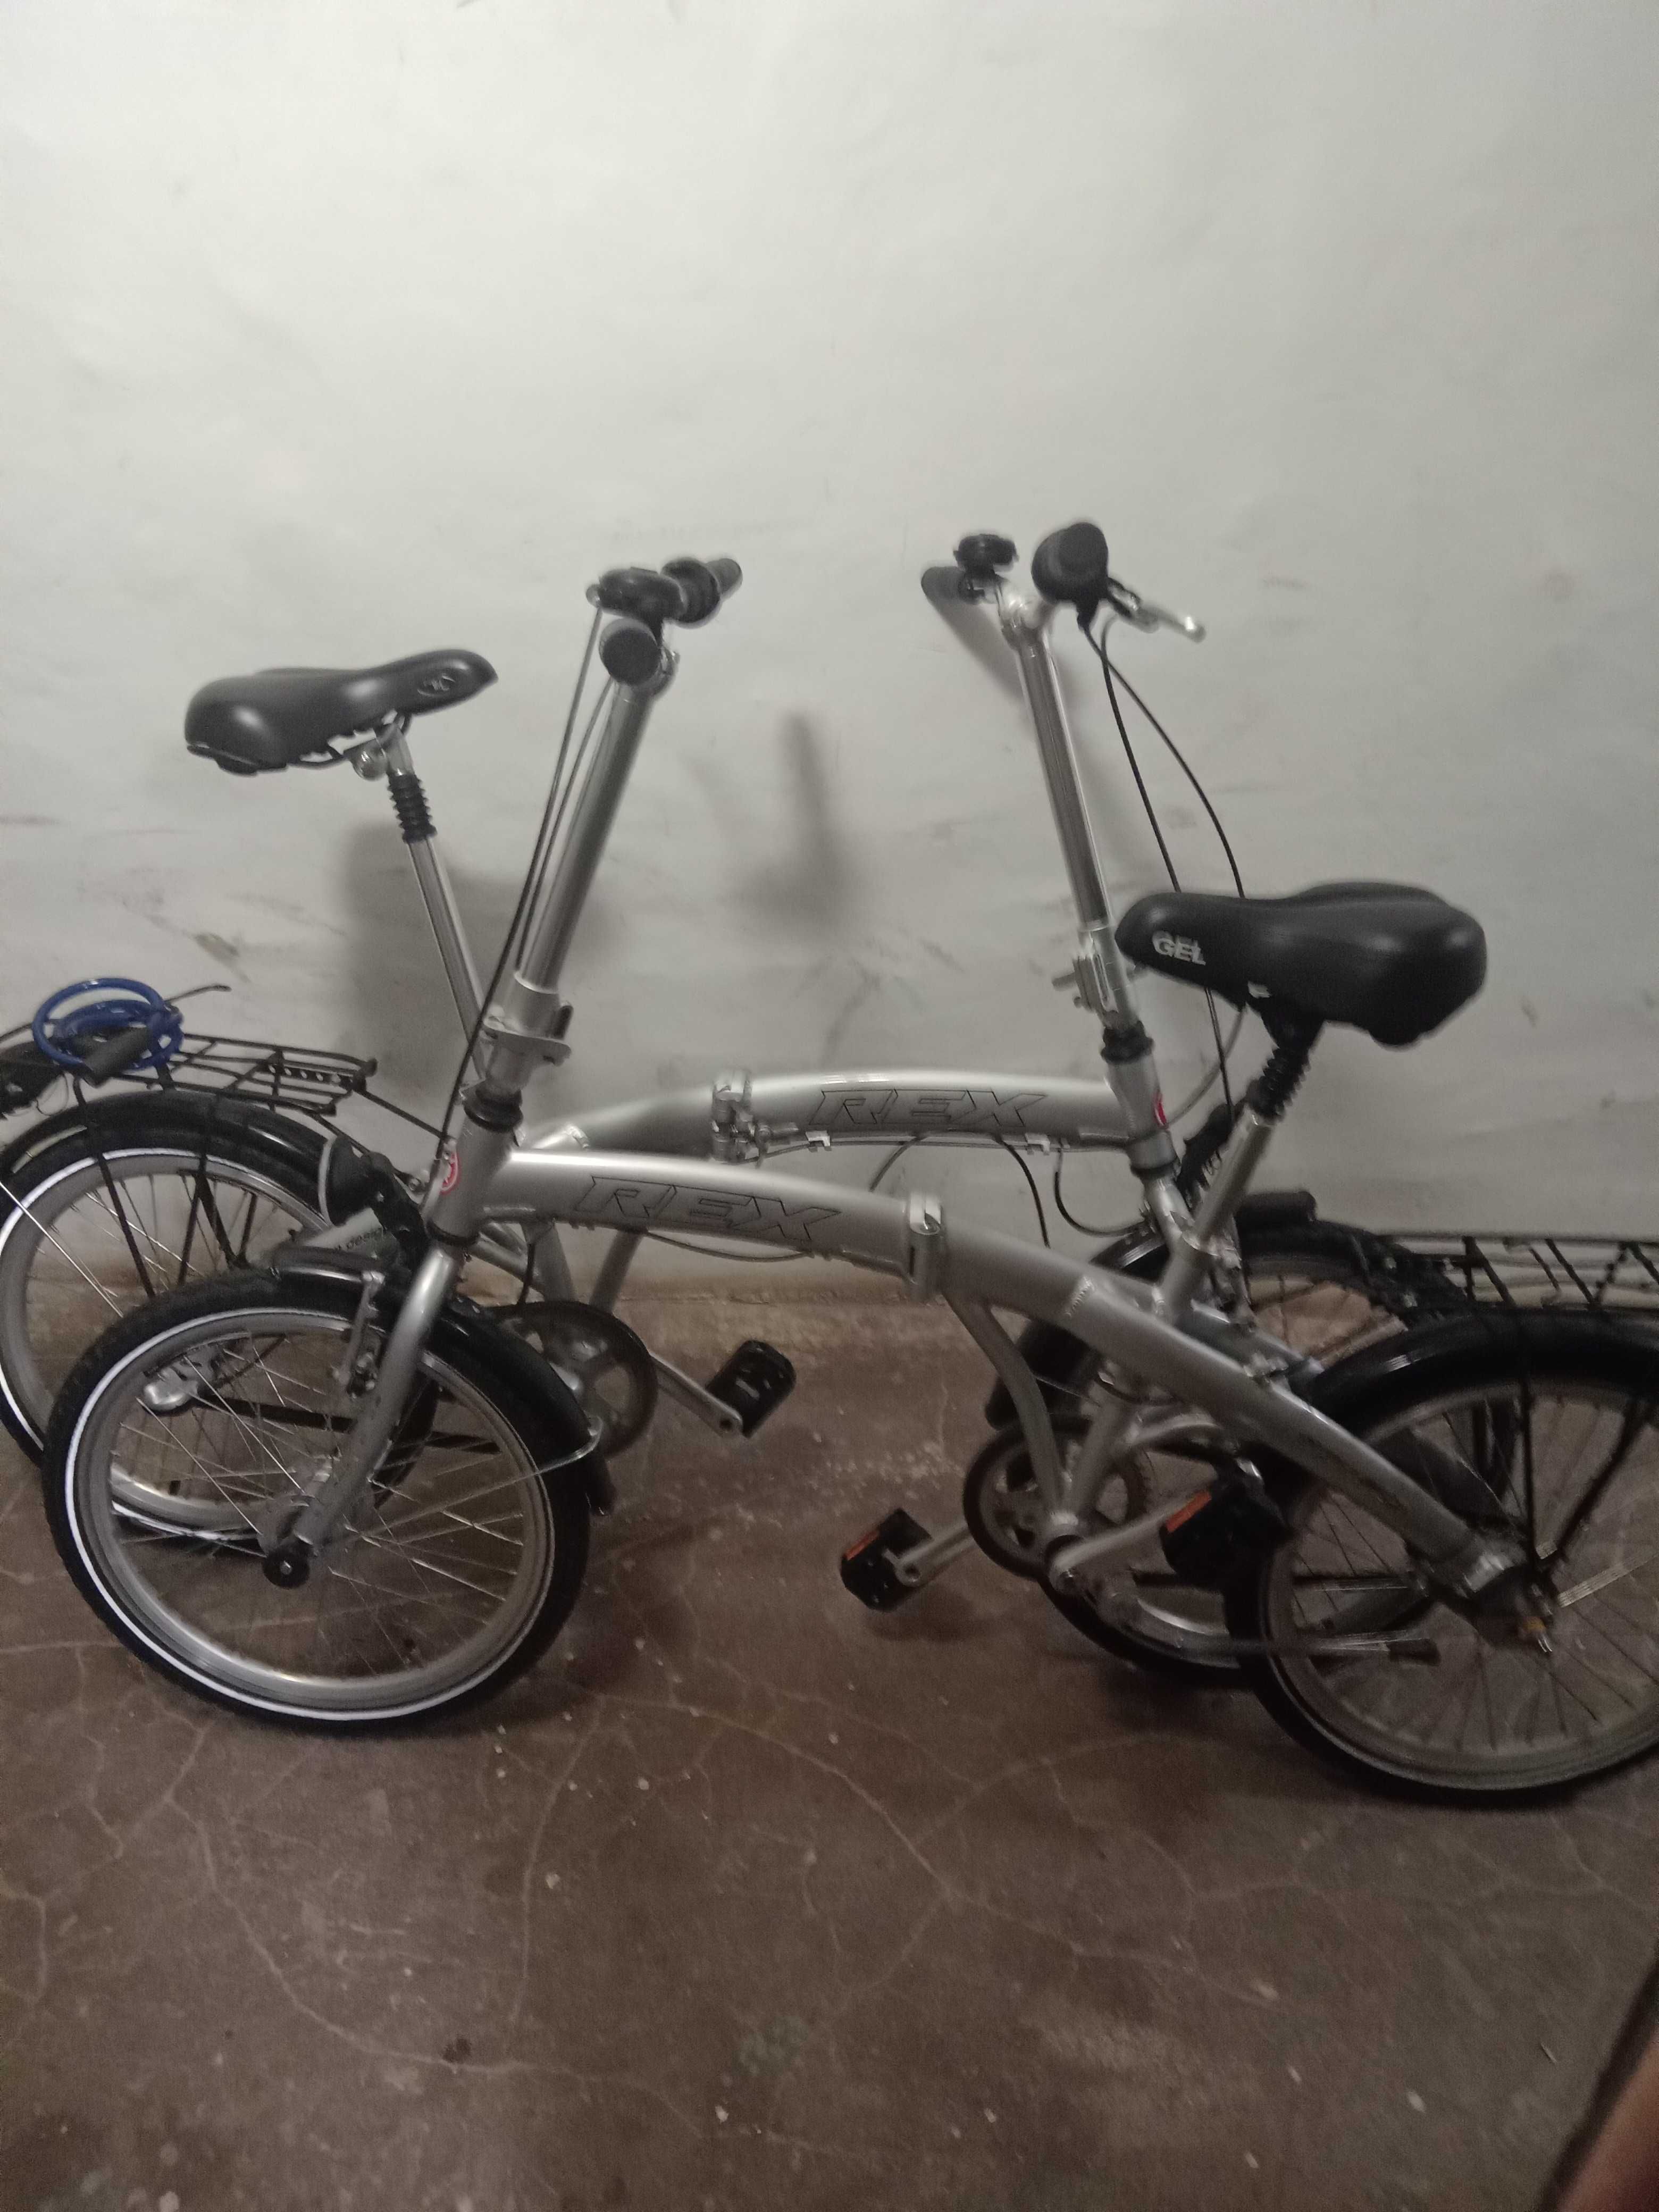 Dwa Turystyczne rowery składane w bdb stanie z przeżutkami